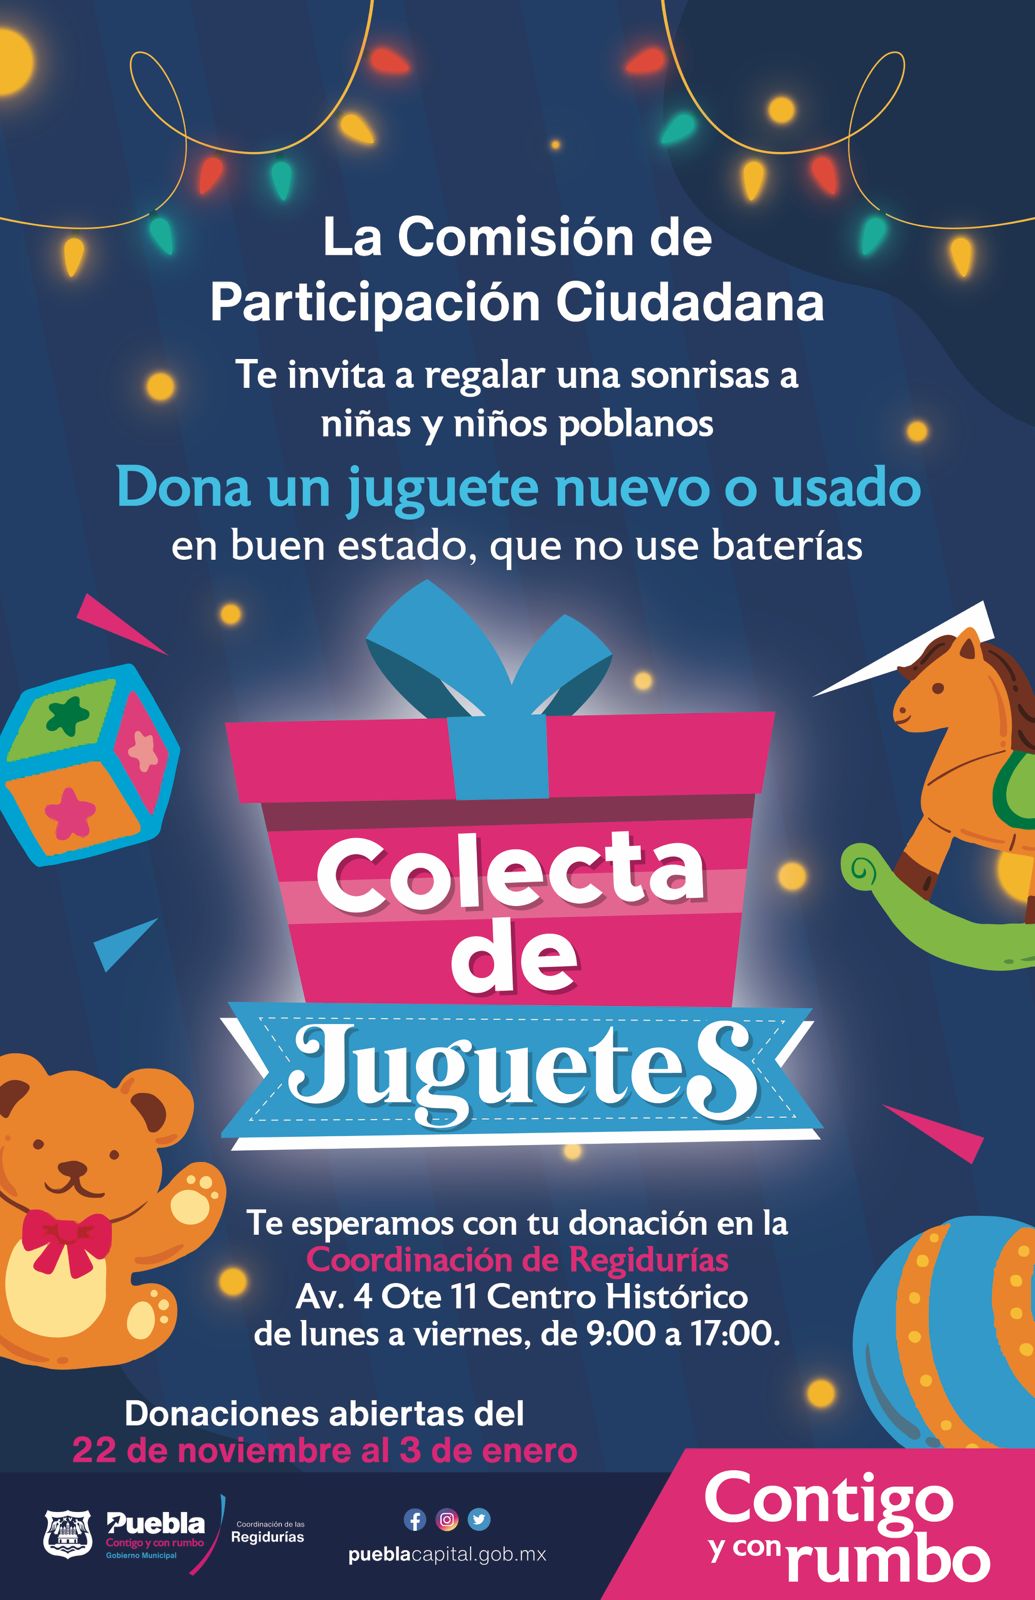 Regidores de Puebla invitan a donar juguetes para ayudar a los reyes magos